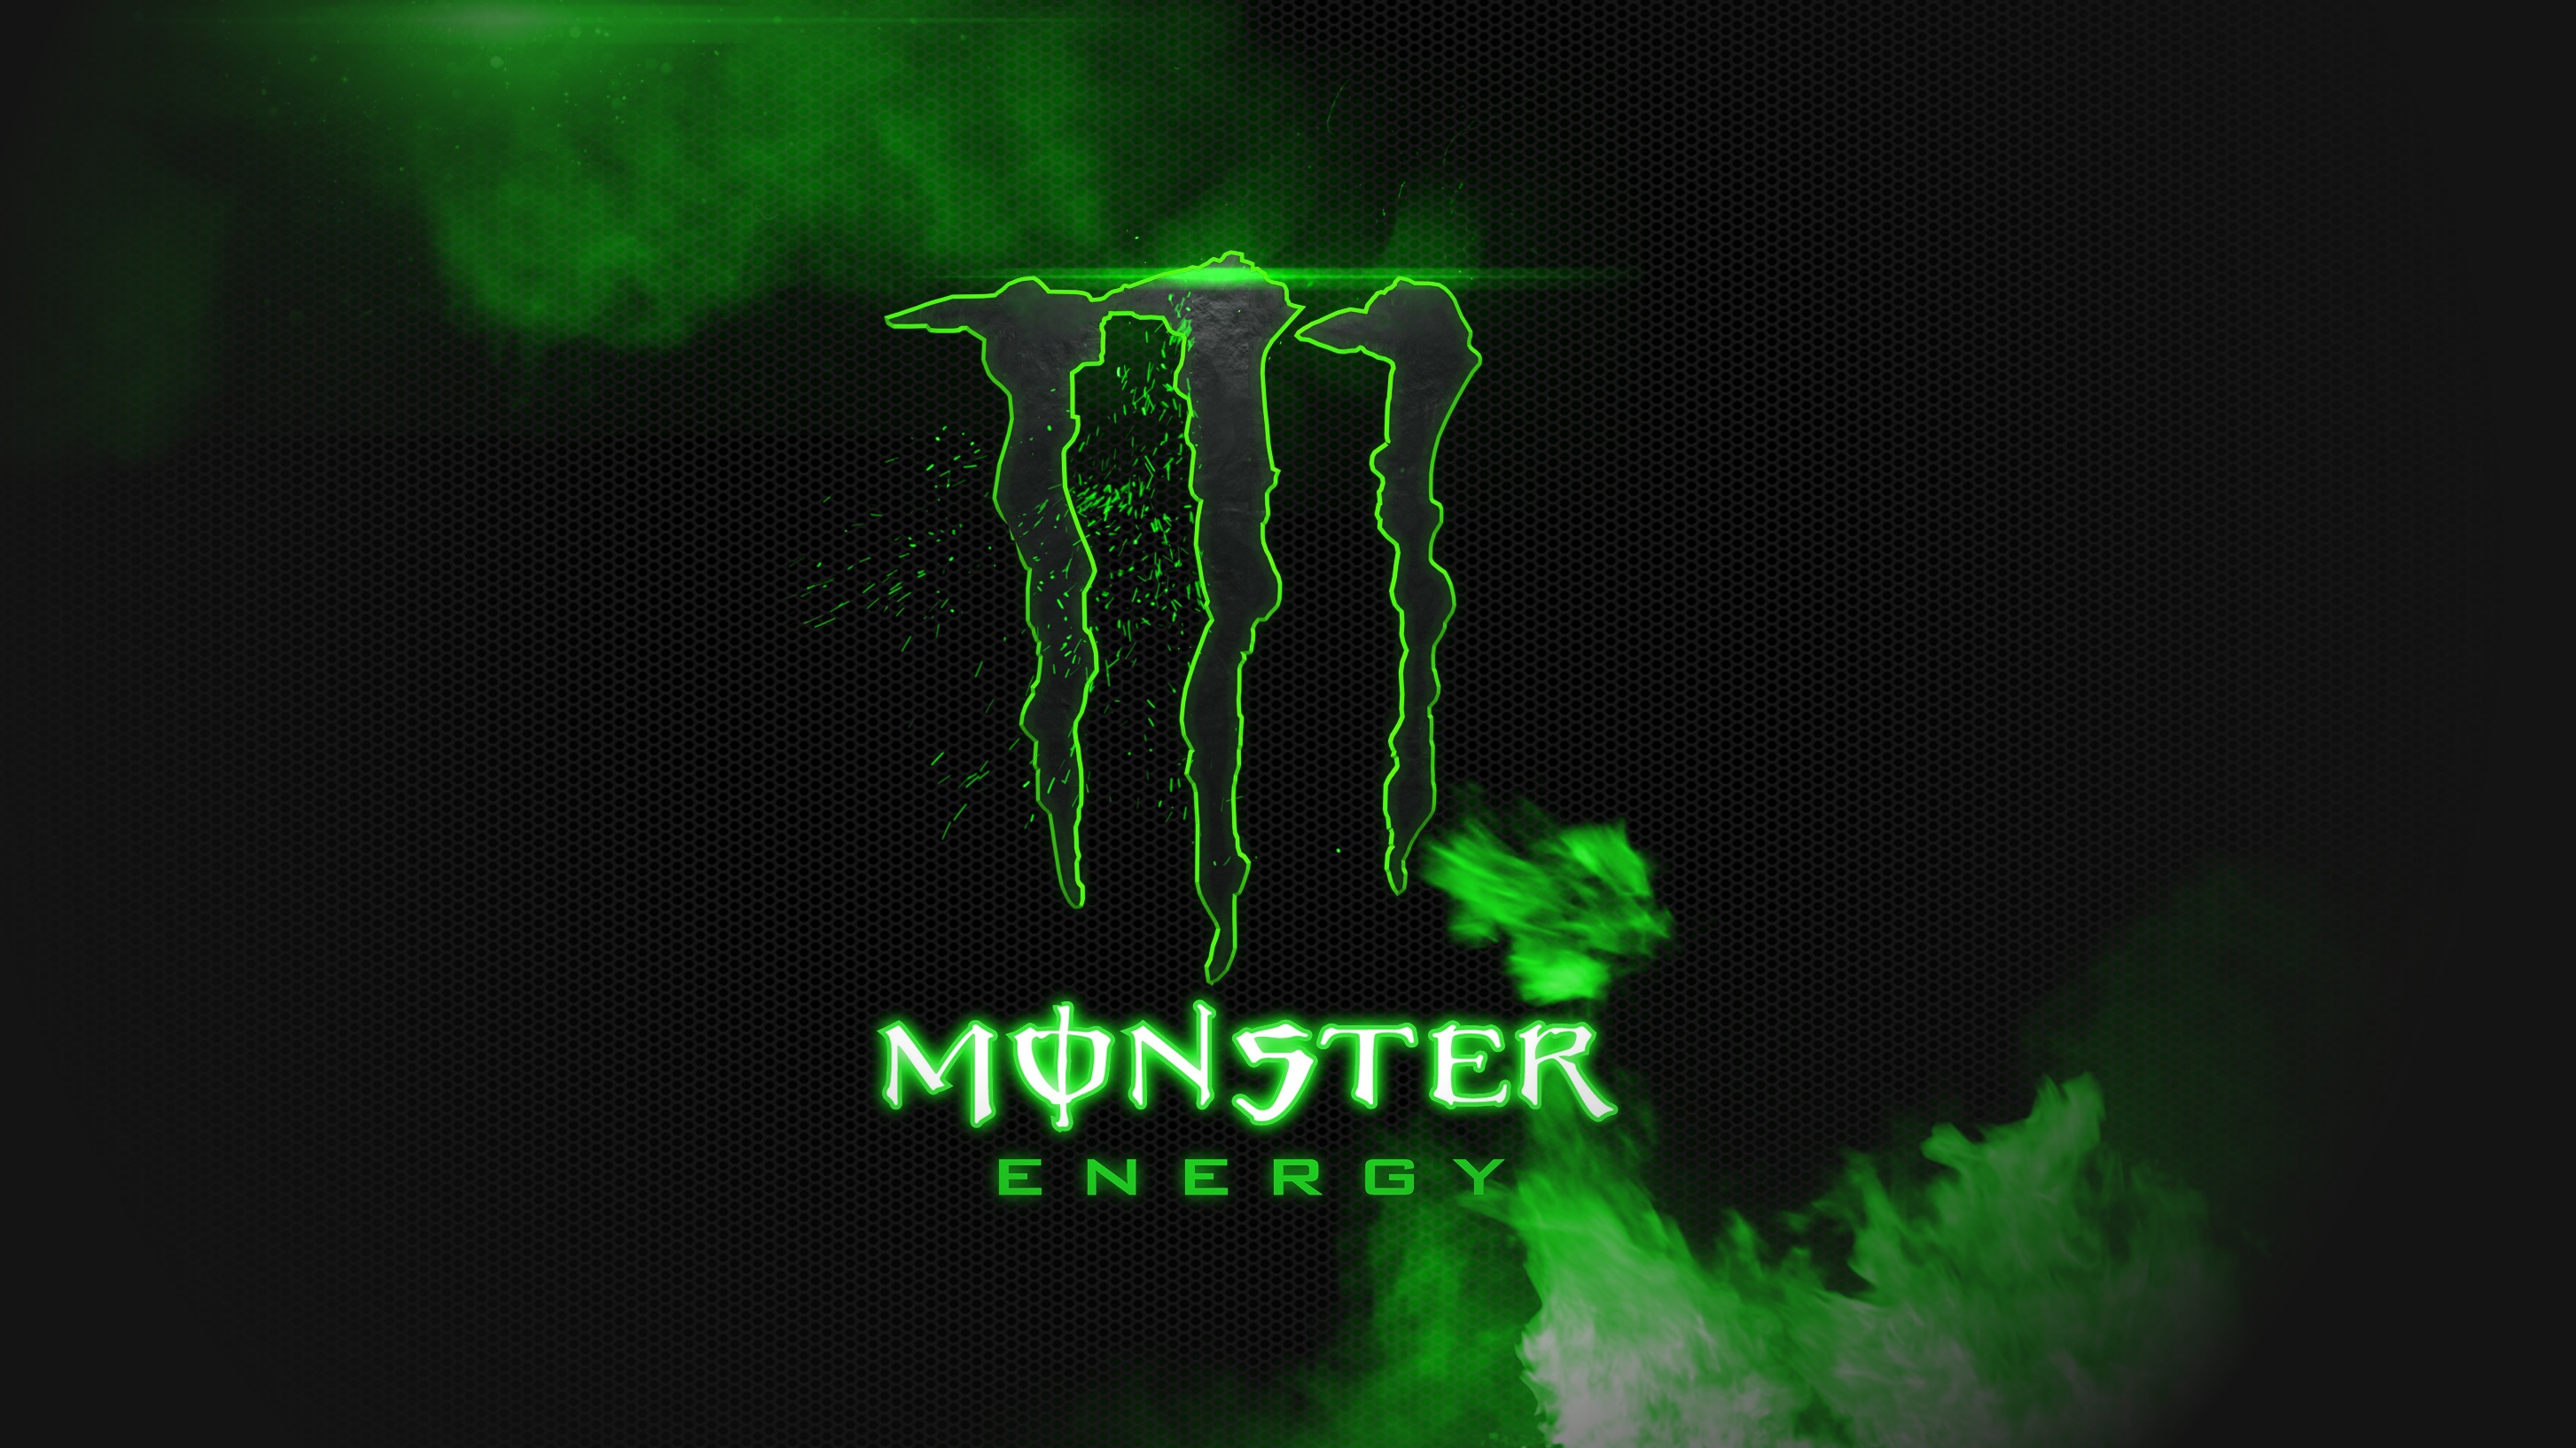 Monster energy wallpaper